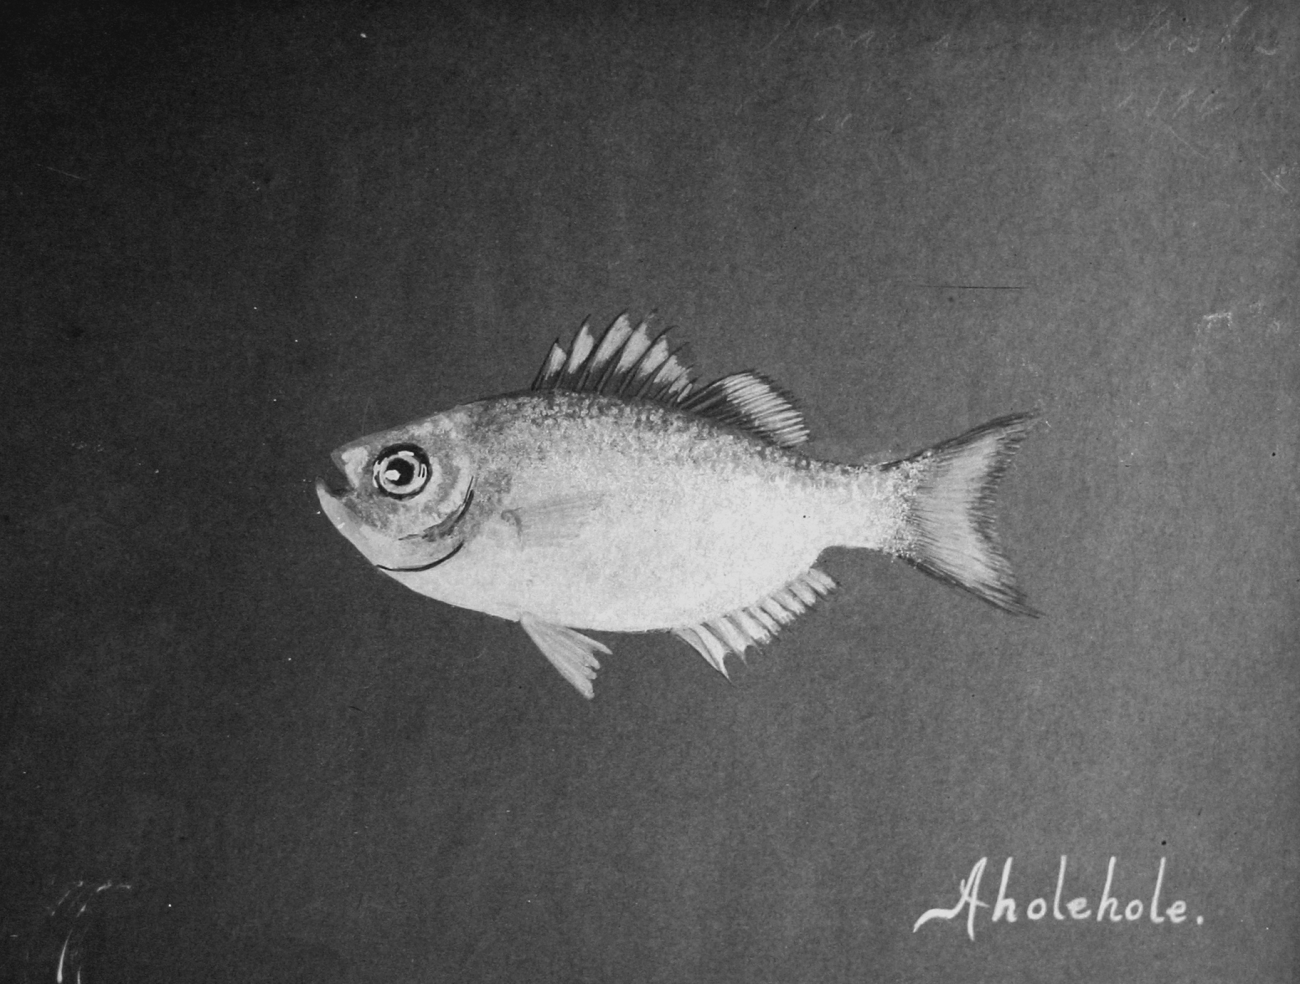 Hawaiian fishes, 1896, Aholehole